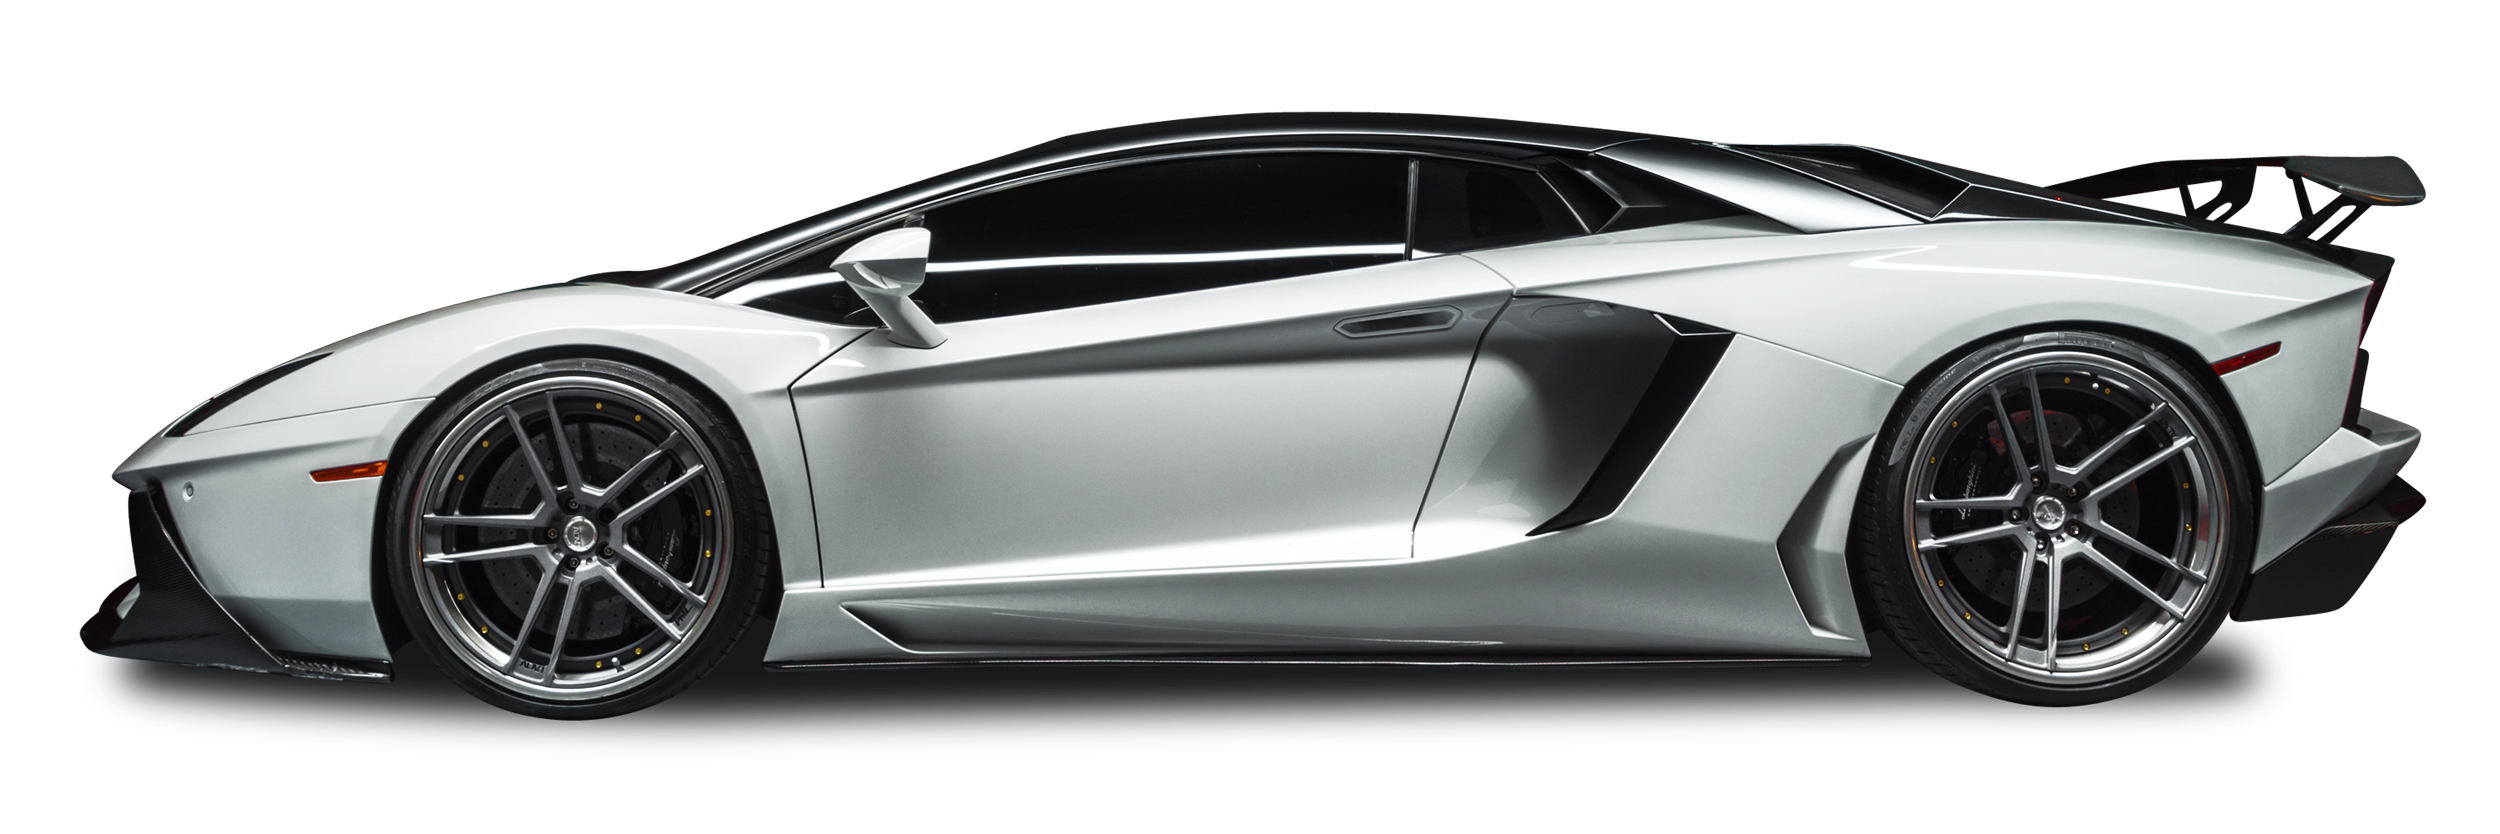 Lamborghini Aventador conversível PNG imagem transparente